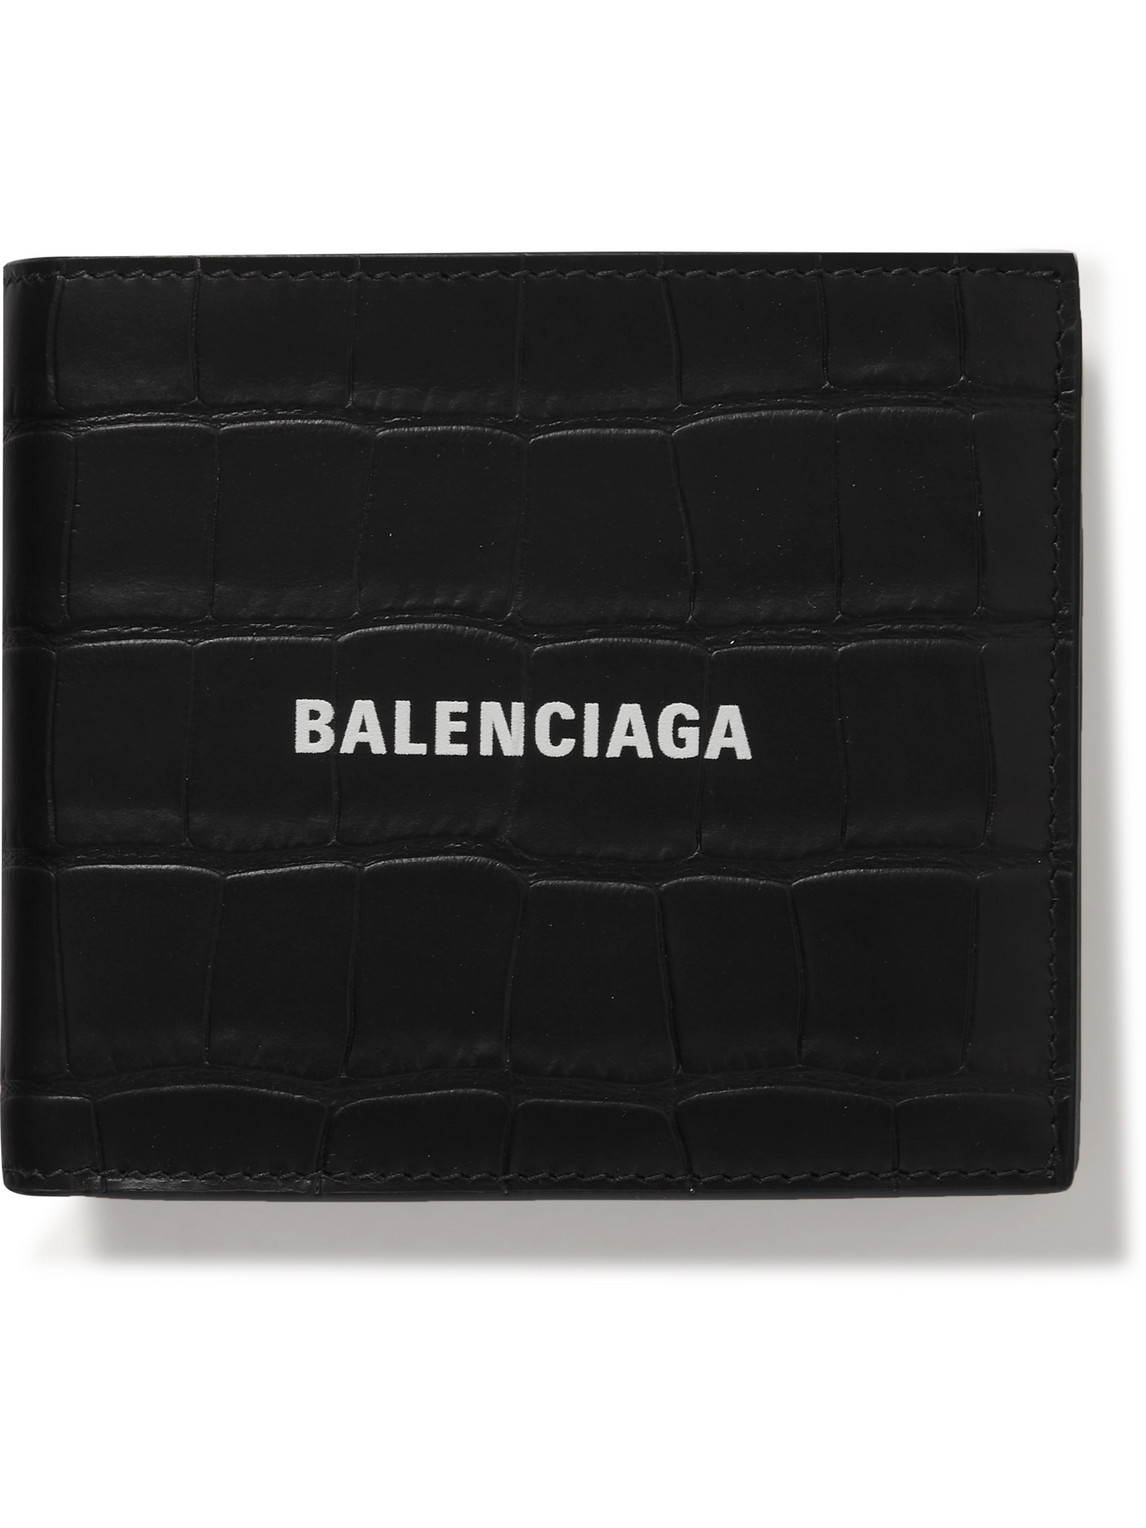 Balenciaga - Logo-Print Croc-Effect Leather Billfold Wallet - Men - Black von Balenciaga